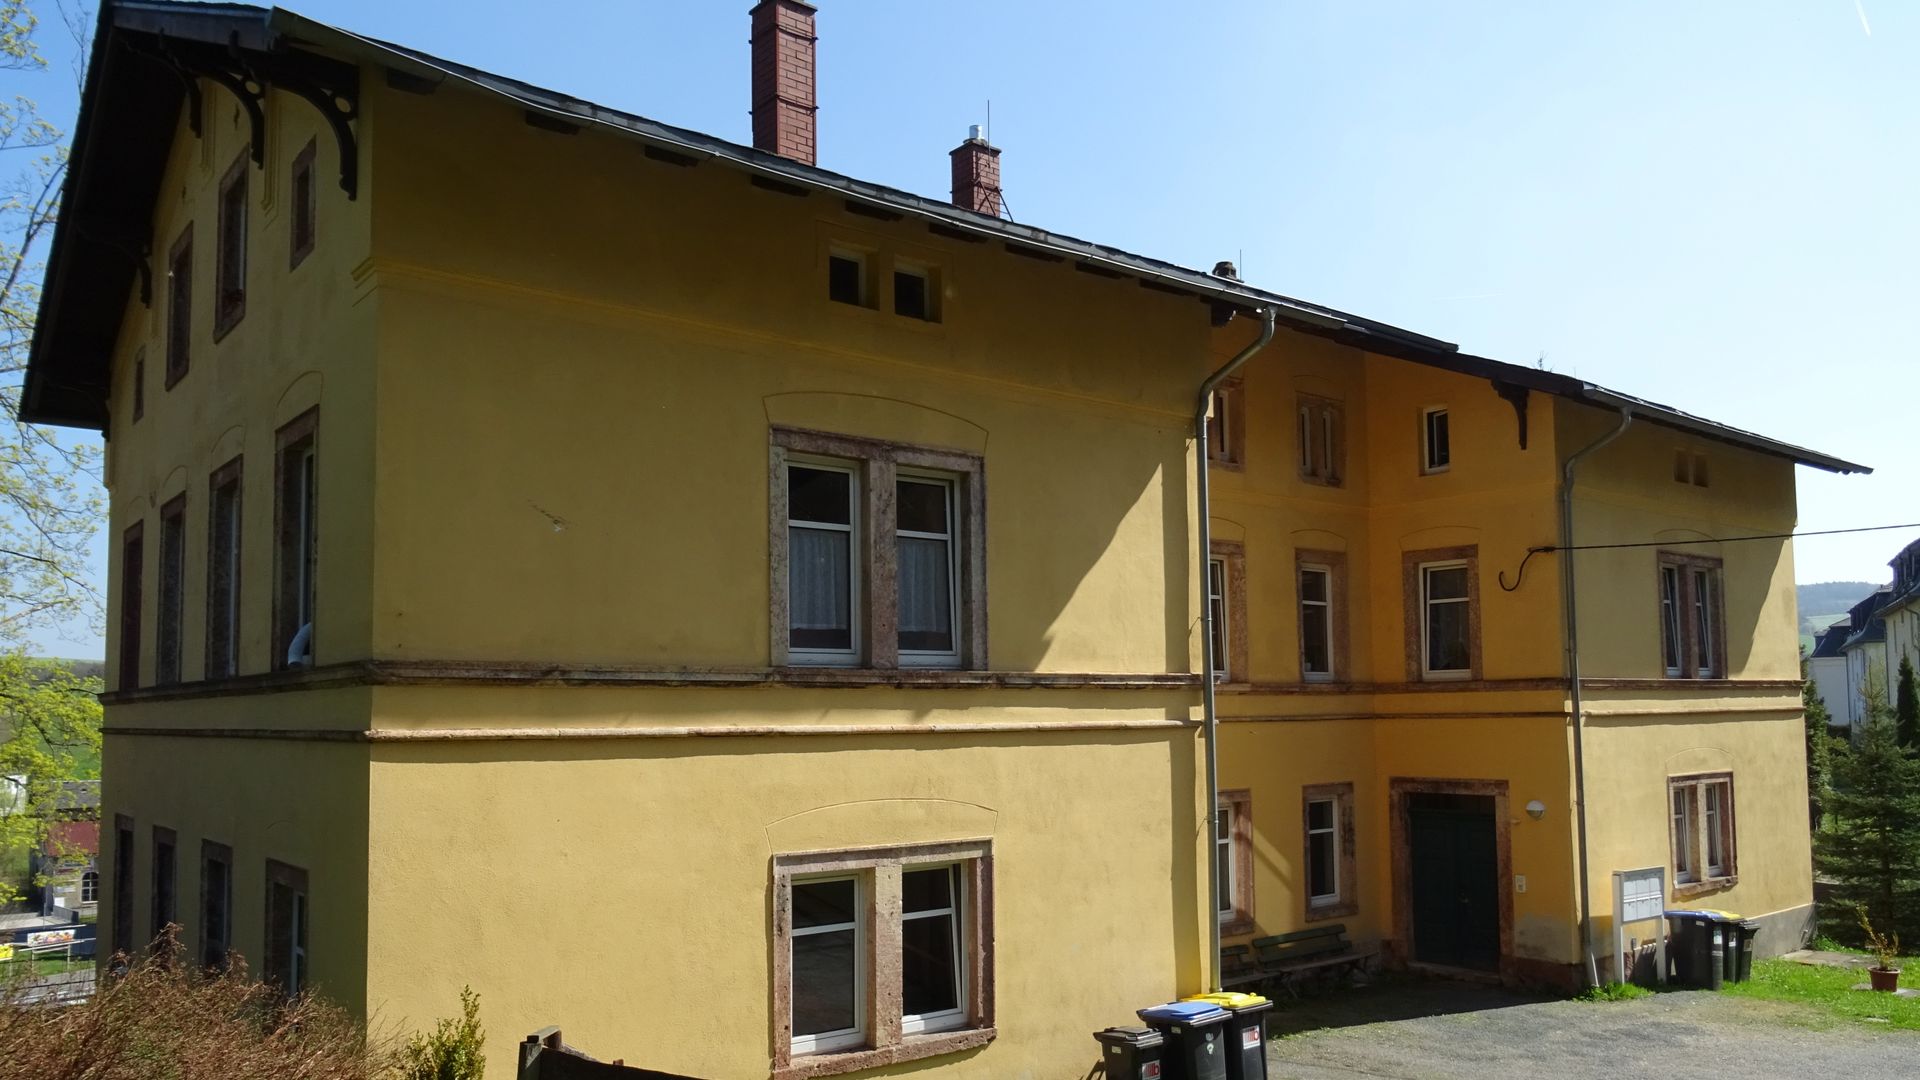 3 bed apartment at Leubsdorf, SAXONY, DE | #1522368 ...